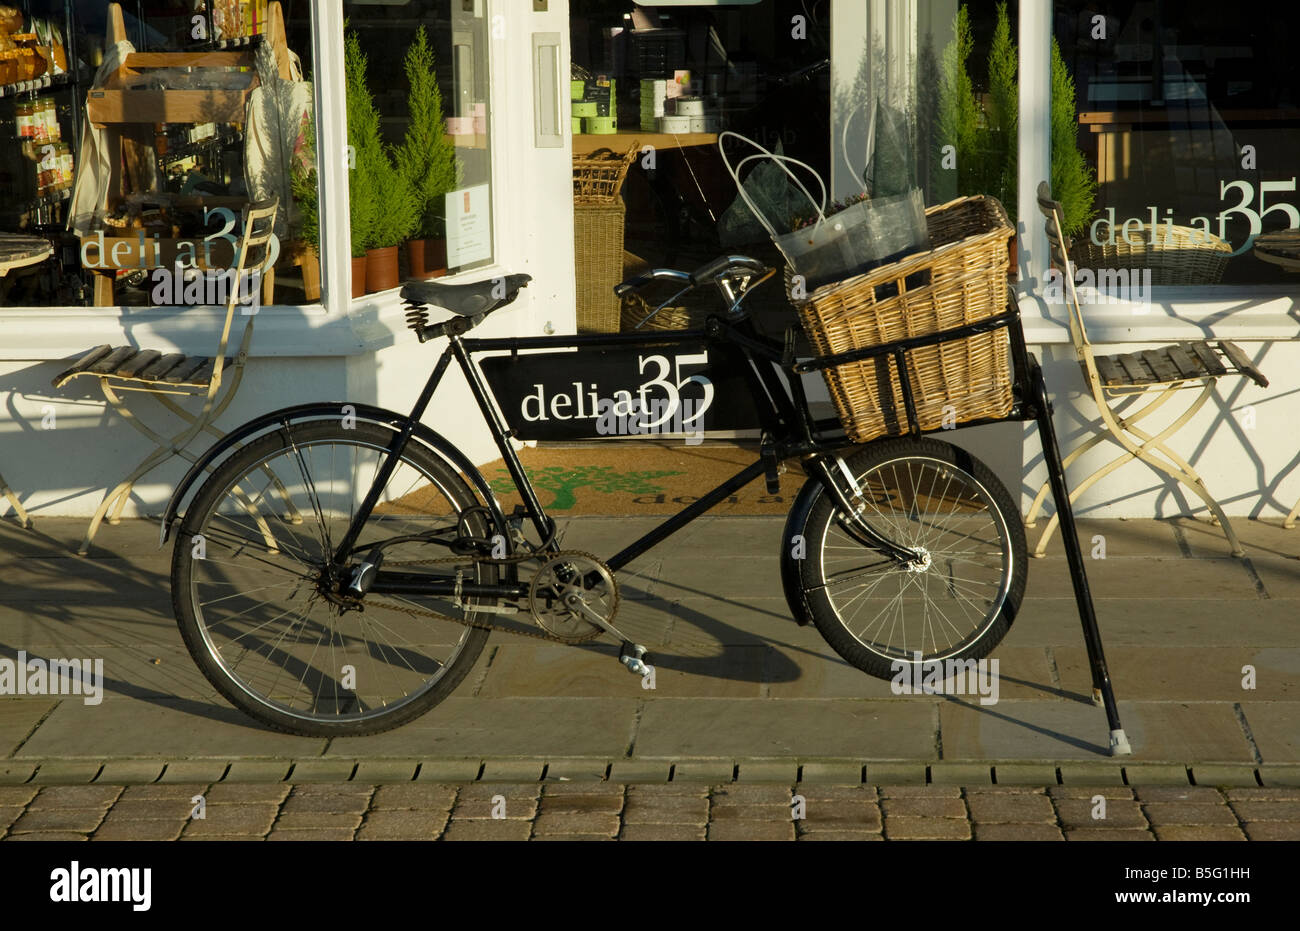 Delivery bike outside a deli shop Stock Photo